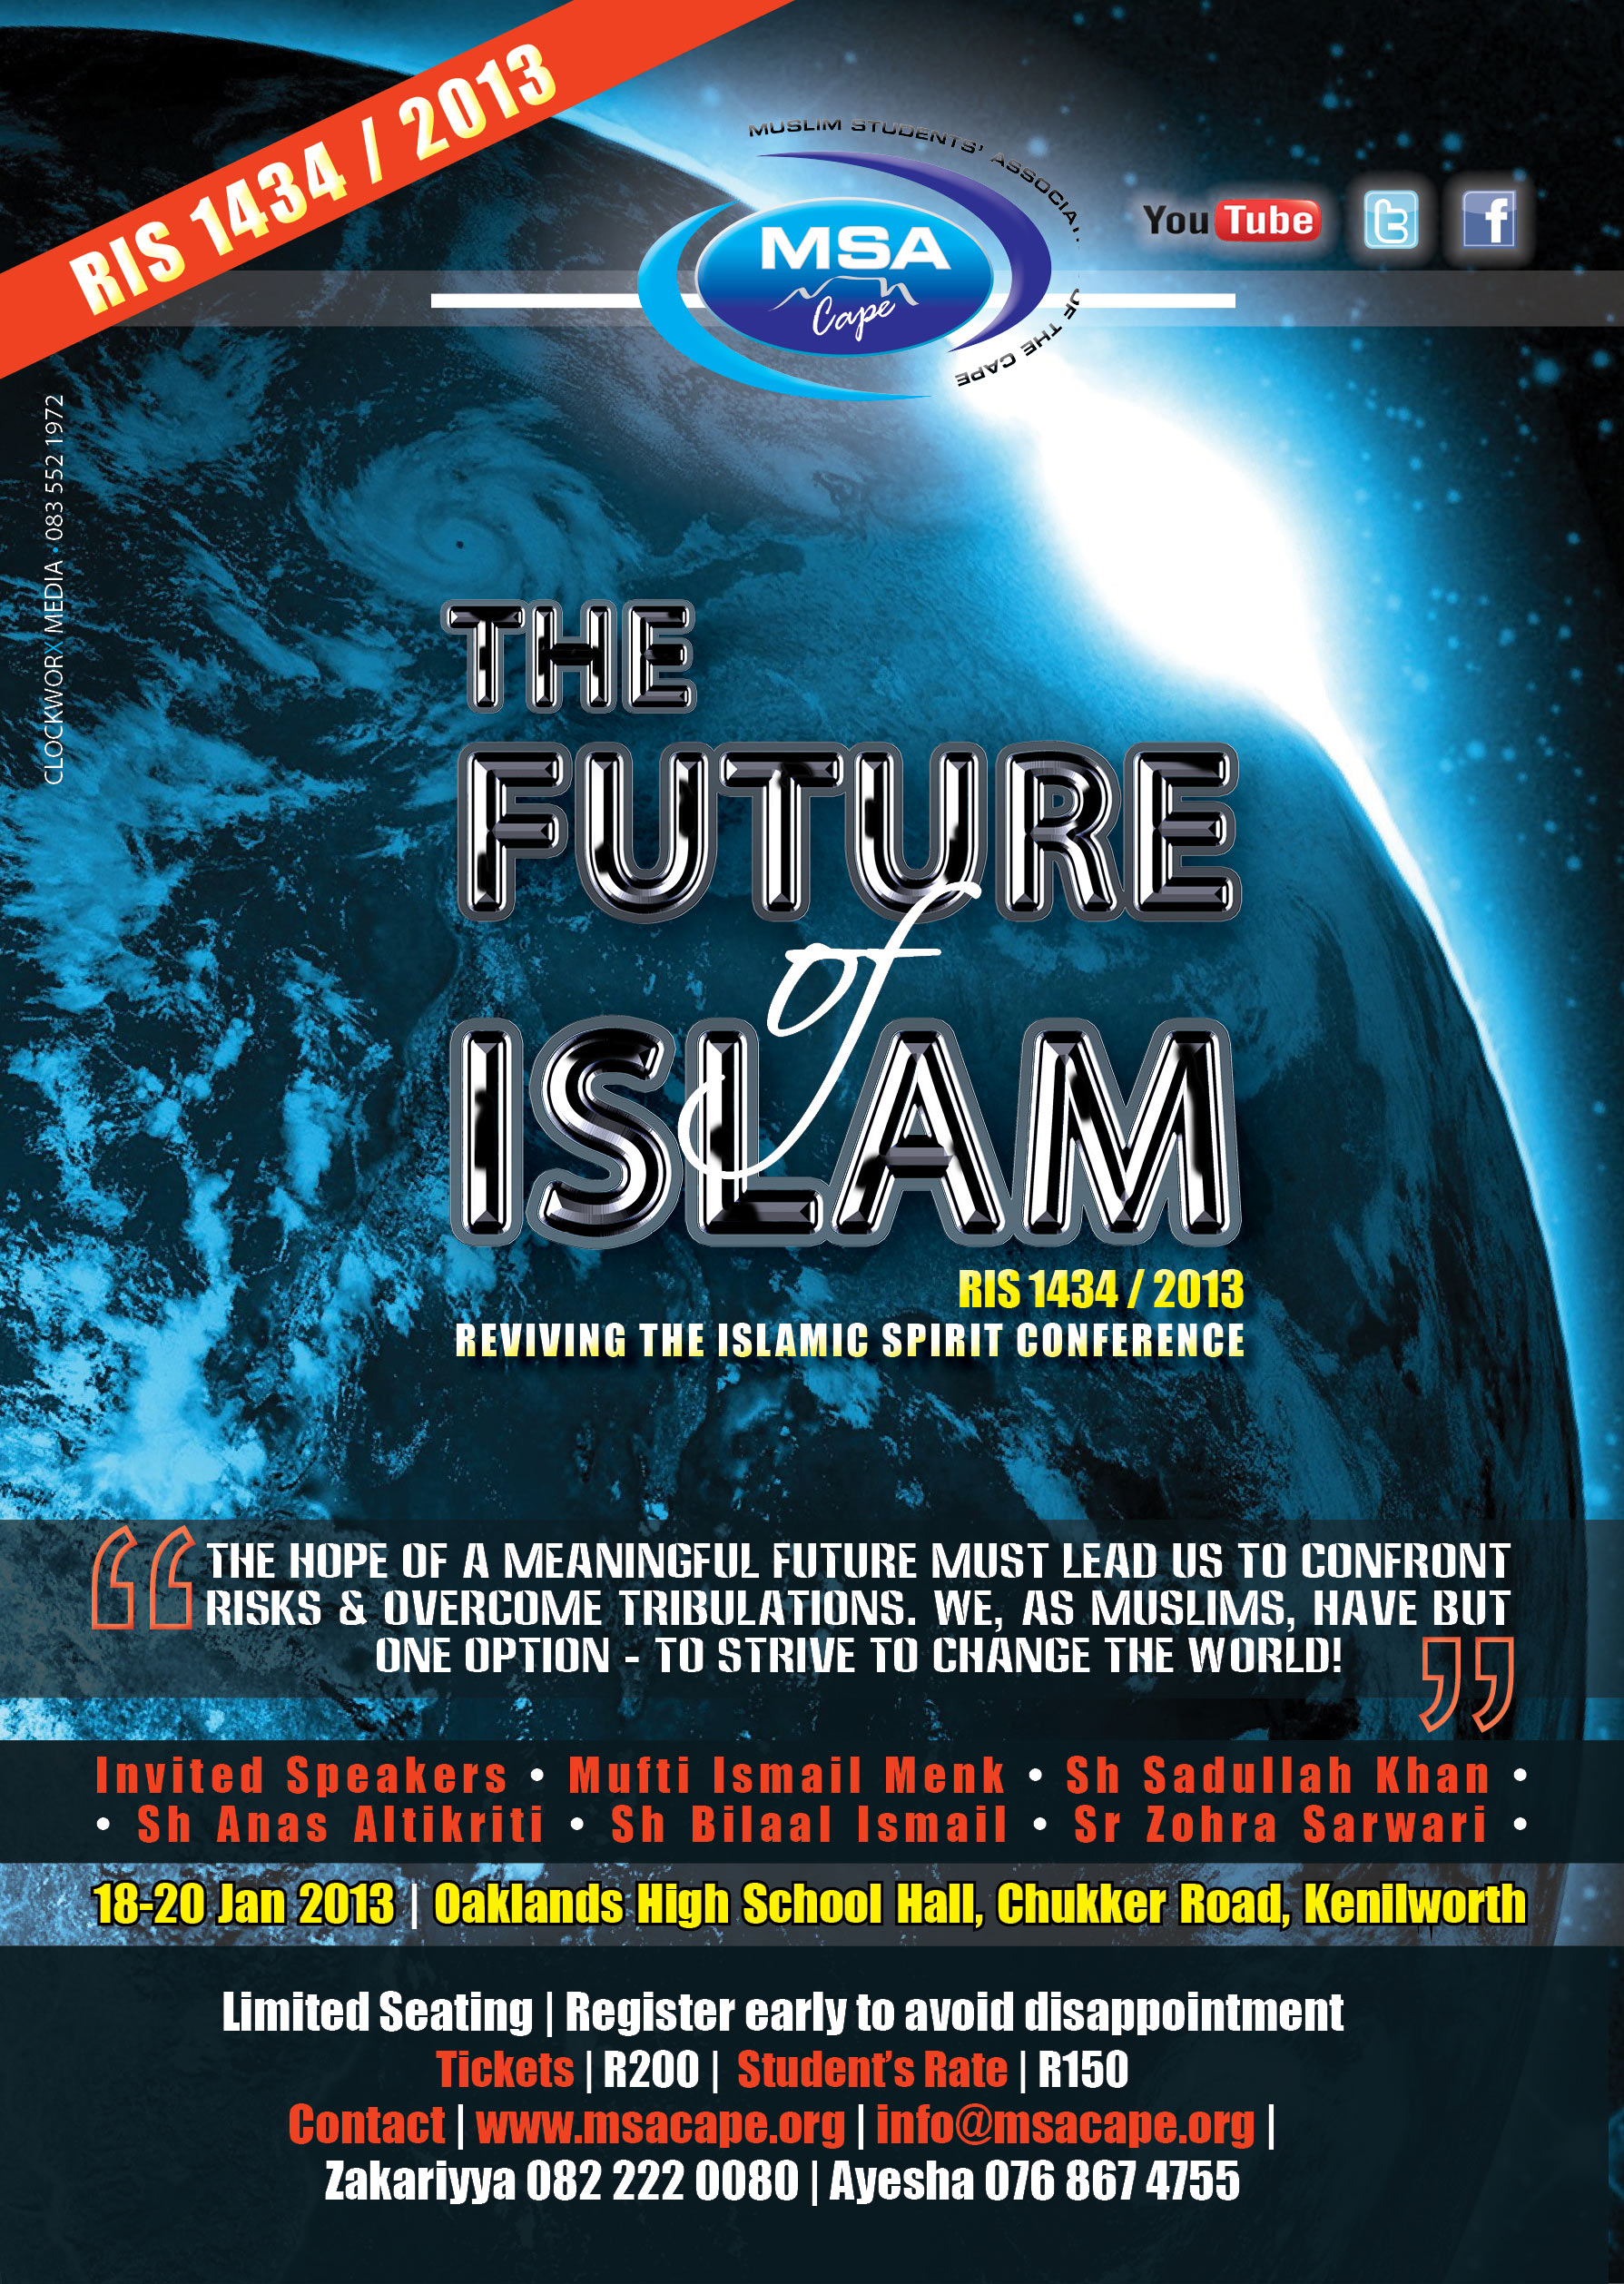 RIS 2013: The Future of Islam.